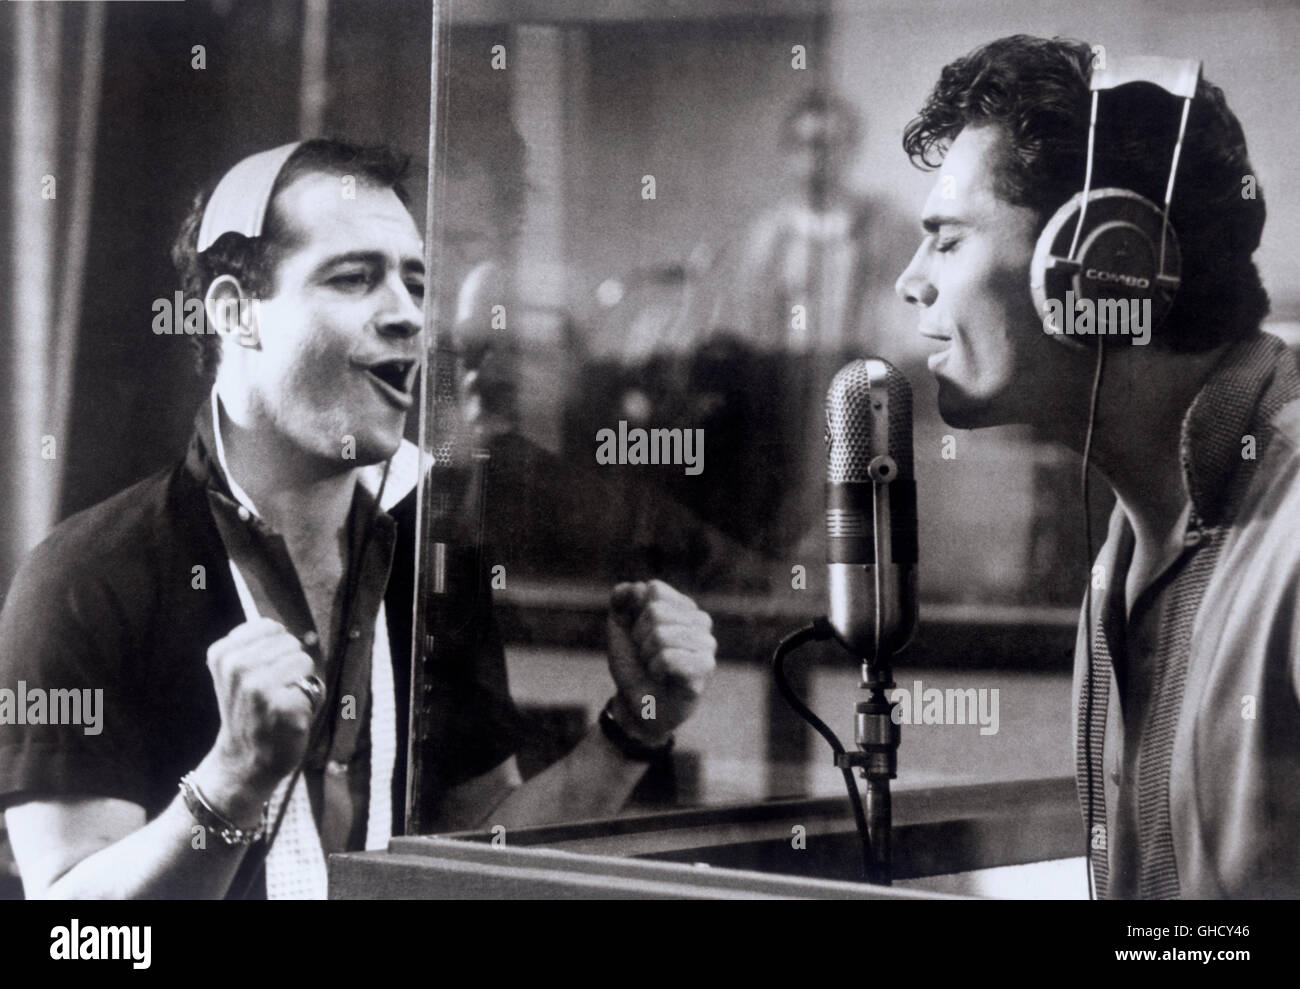 IDOLMAKER USA 1980 Taylor Hackford außen der Aufnahmekabine Vinnie Vacarri (RAY SHARKEY) singt zusammen mit seinem Schützling, Tommy Lee (PAUL LAND), die einem Rock-Datensatz am Anfang einer erfolgreichen Karriere schneidet macht ihn das Idol seiner Generation. Regie: Taylor Hackford Stockfoto